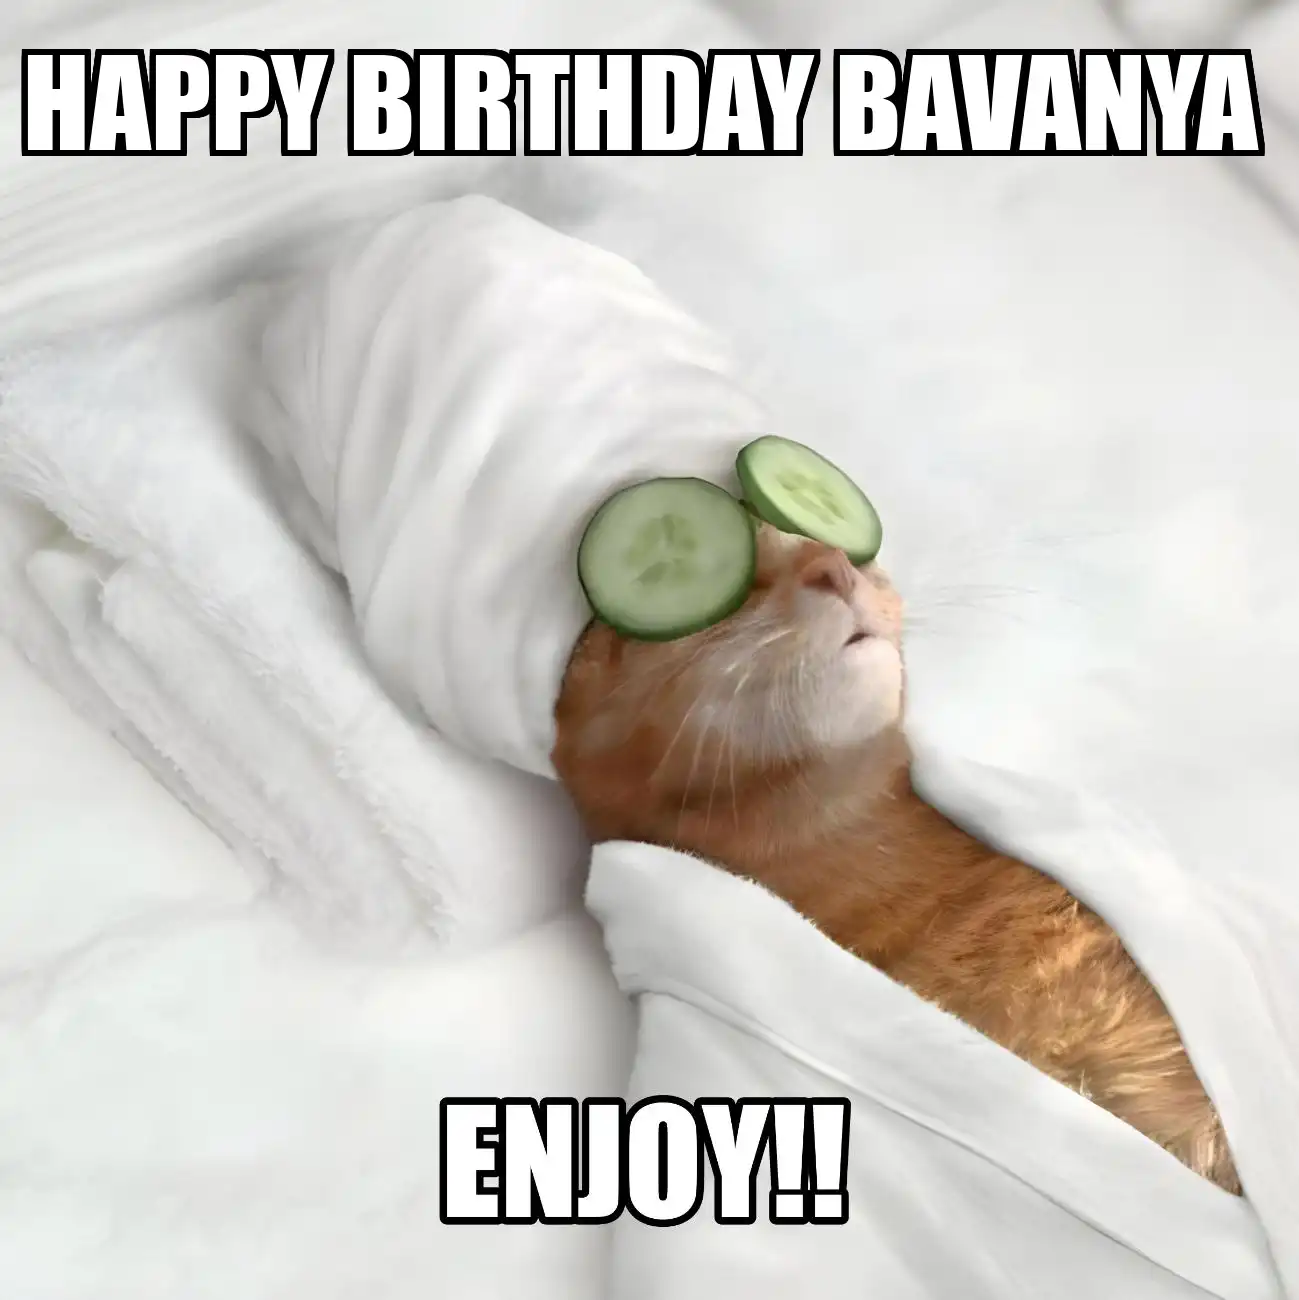 Happy Birthday Bavanya Enjoy Cat Meme